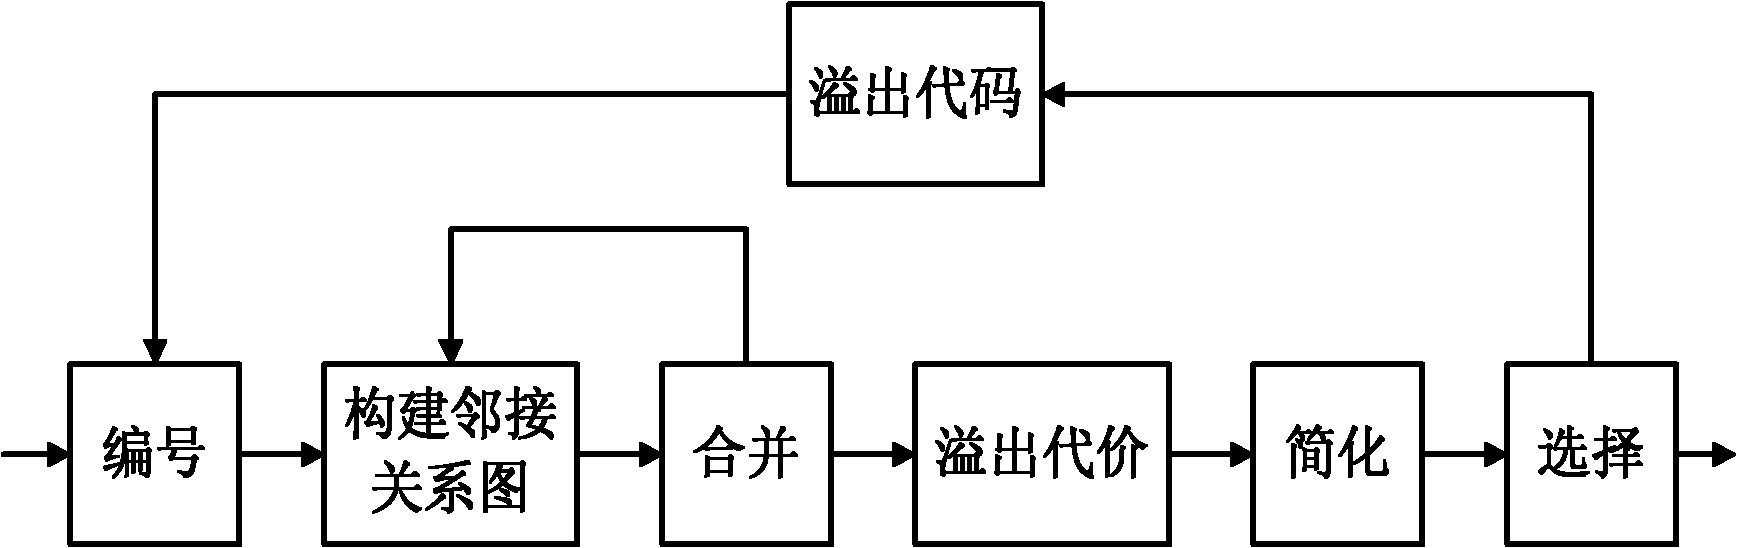 Method for distributing register in embedded system based on inverse image description